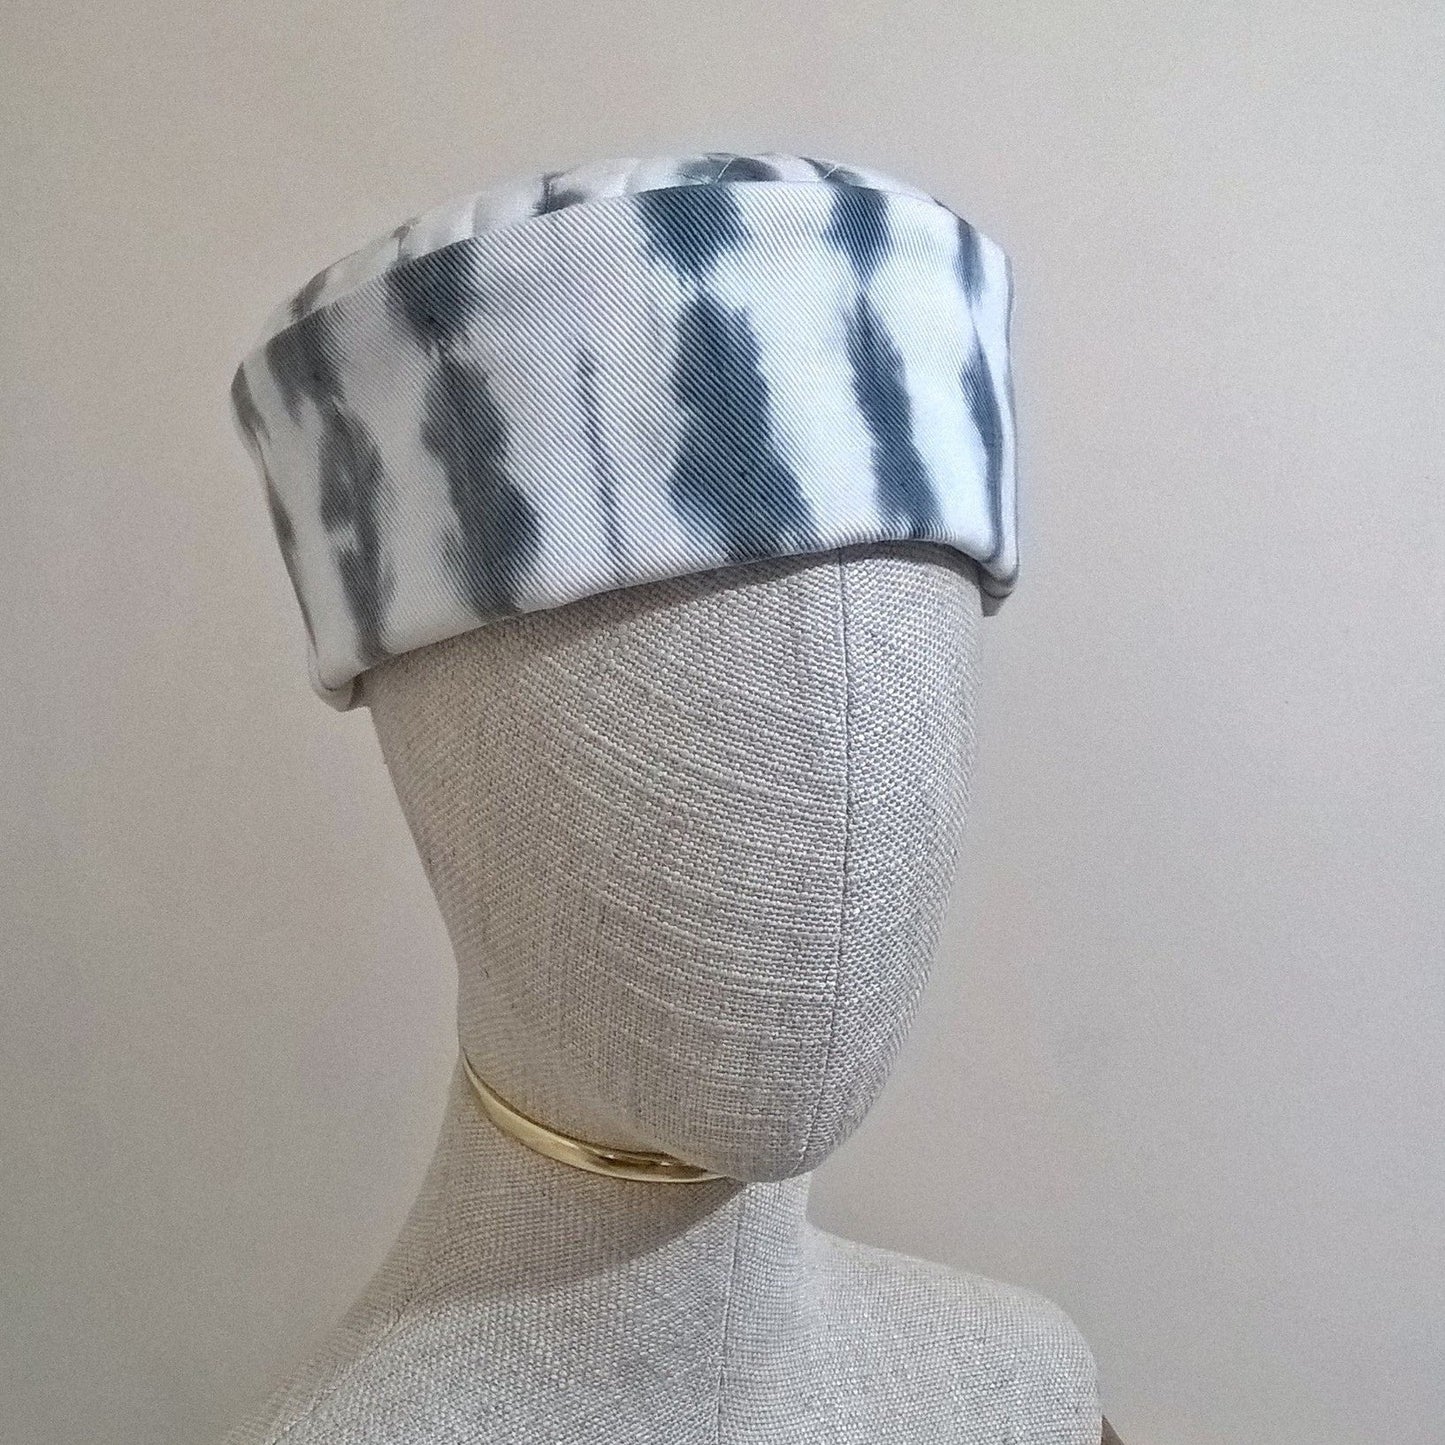 White cotton twill hat Shibori tie dyed with black